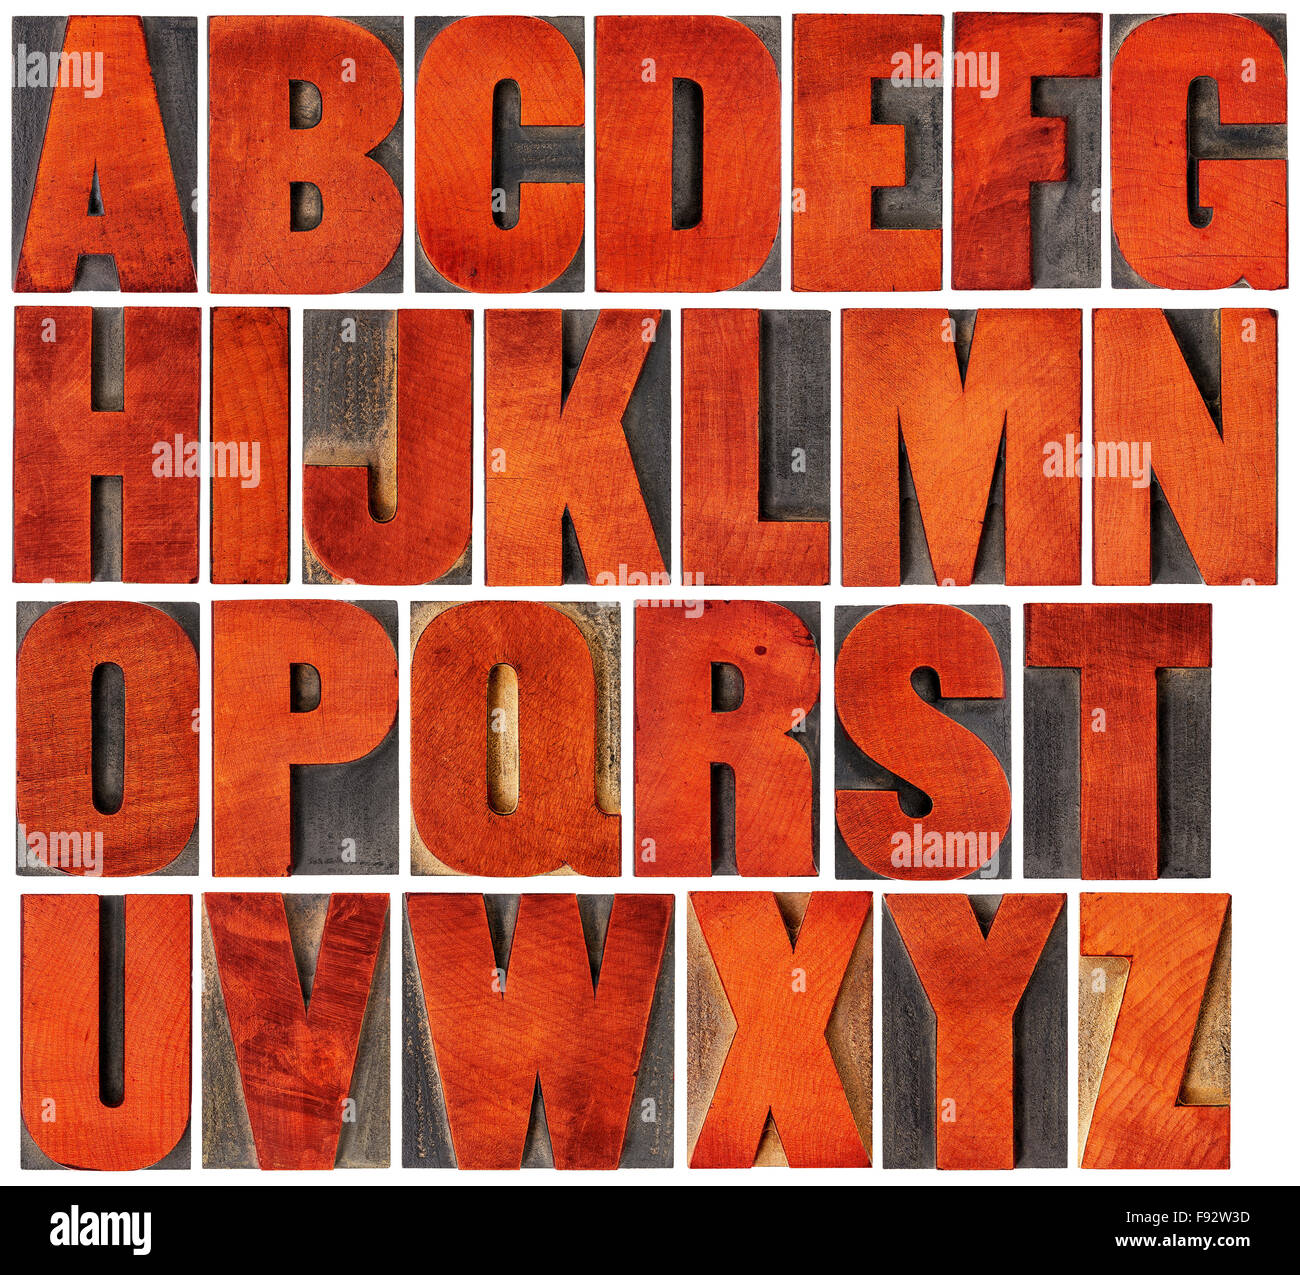 Alphabet complet en français - un collage de bois vintage isolés 26 blocs de la typographie, rayé et taché de rouge Banque D'Images